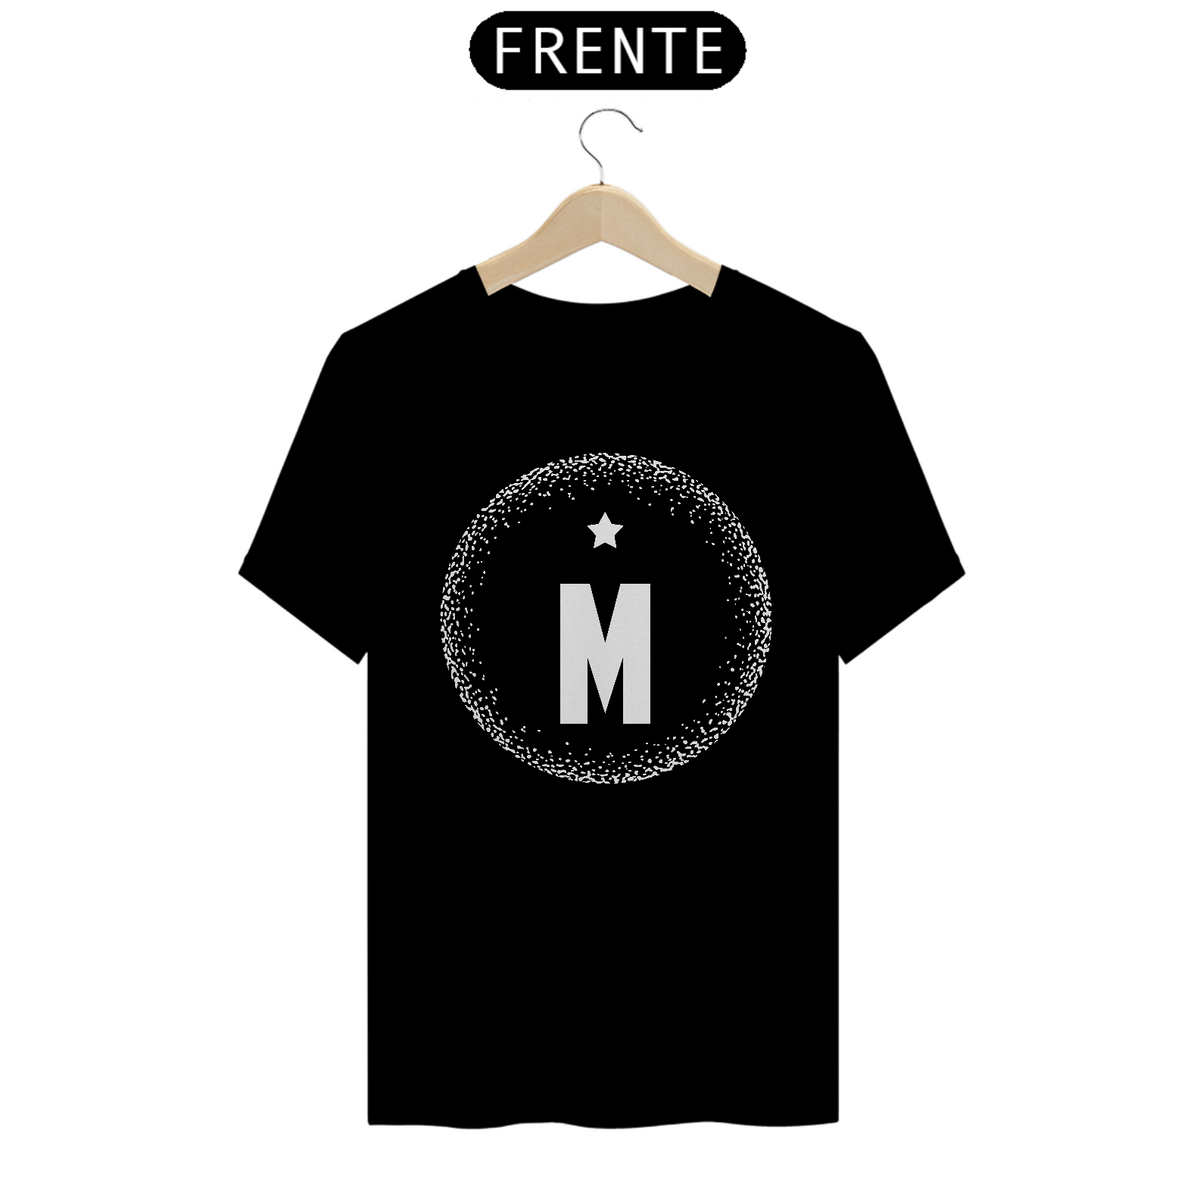 Nome do produto: Camiseta M minds 